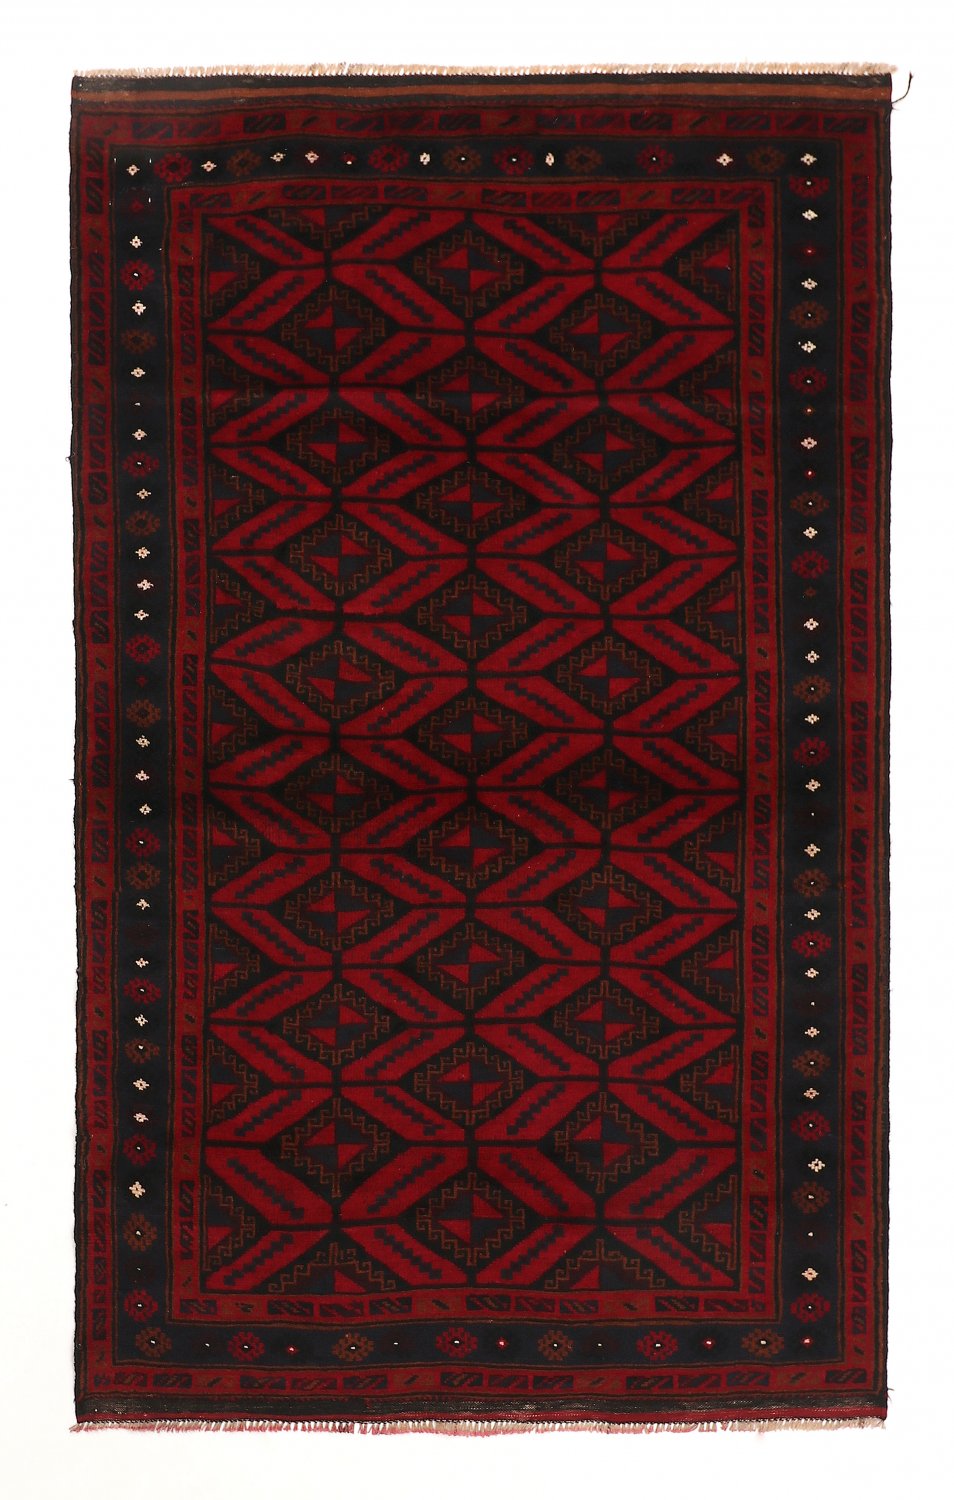 Persian rug Hamedan 208 x 131 cm